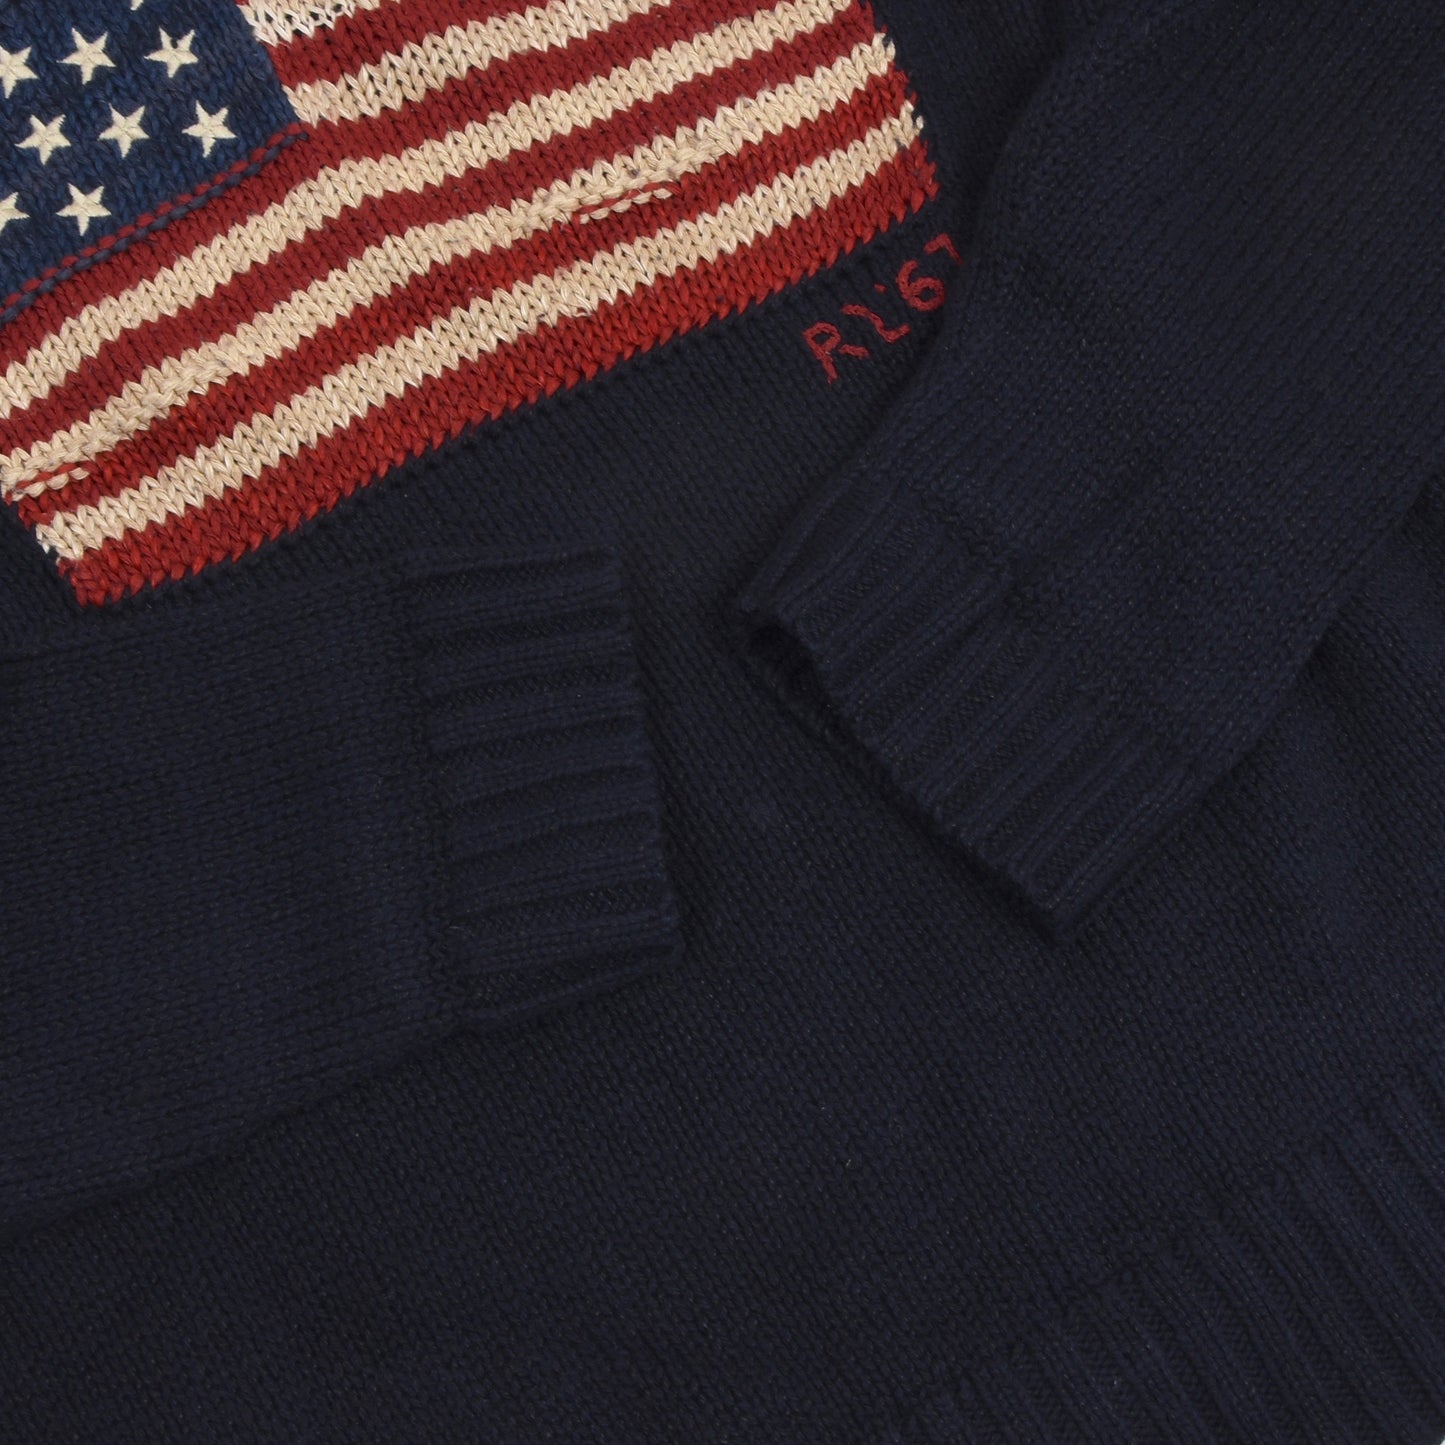 Polo Ralph Lauren American Flag Cotton/Linen Sweater Size XL - Navy Blue